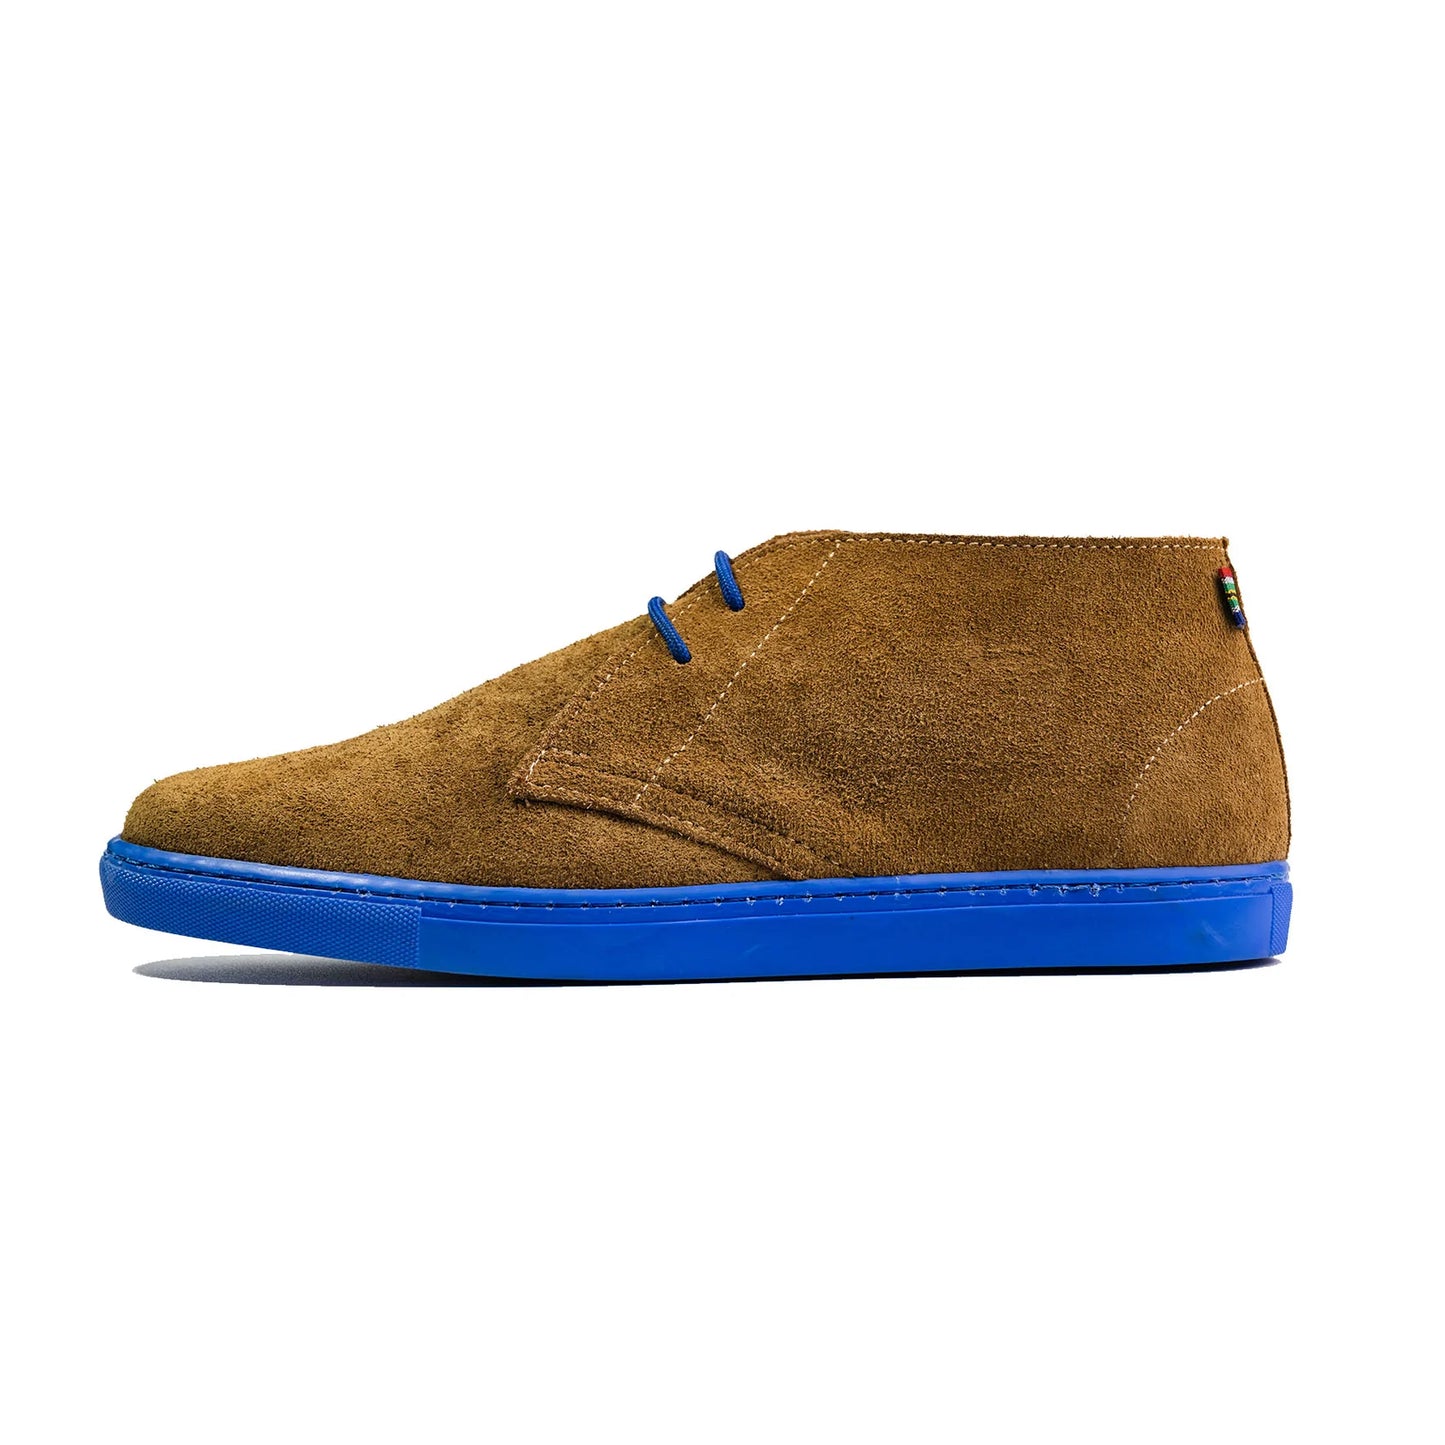 Sneaker Shoes - Blue Veldskoen shoes stok.